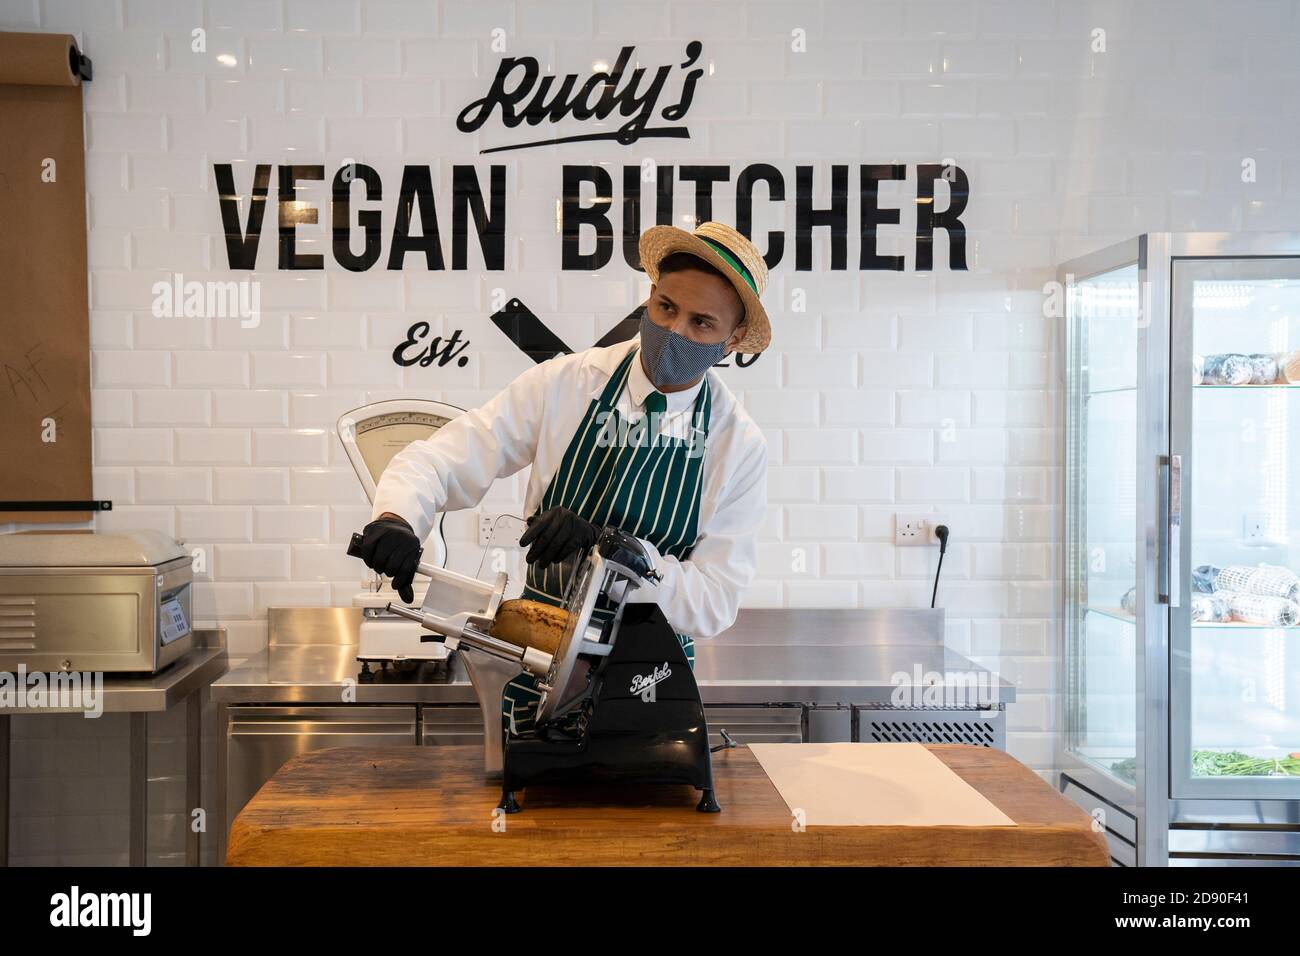 Rudys Vegan Butcher Delikatessengeschäft wird in Islington London eröffnet. Bild zeigt 'Metzger', der Fleischersatz aufschlitzt, Gesichtsmaske trägt. Stockfoto